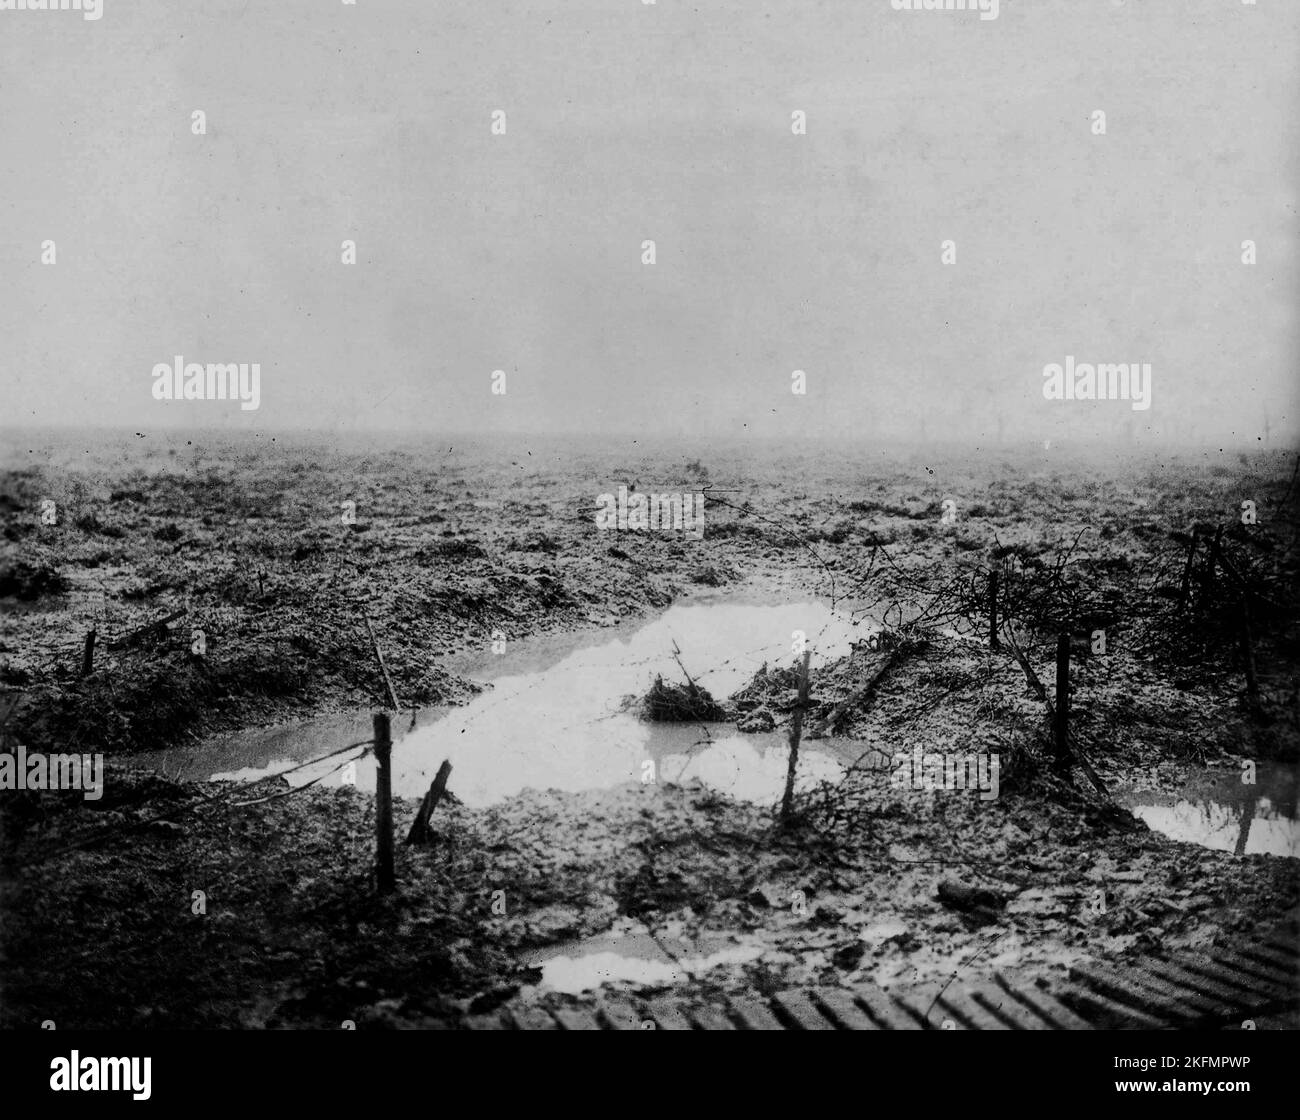 PASCHENDALE, BELGIQUE - 1917 - pas de terre d'homme... la boue, l'eau et le fil barbelé illustrent l'horrible terrain par lequel les Canadiens ont avancé à l' Banque D'Images